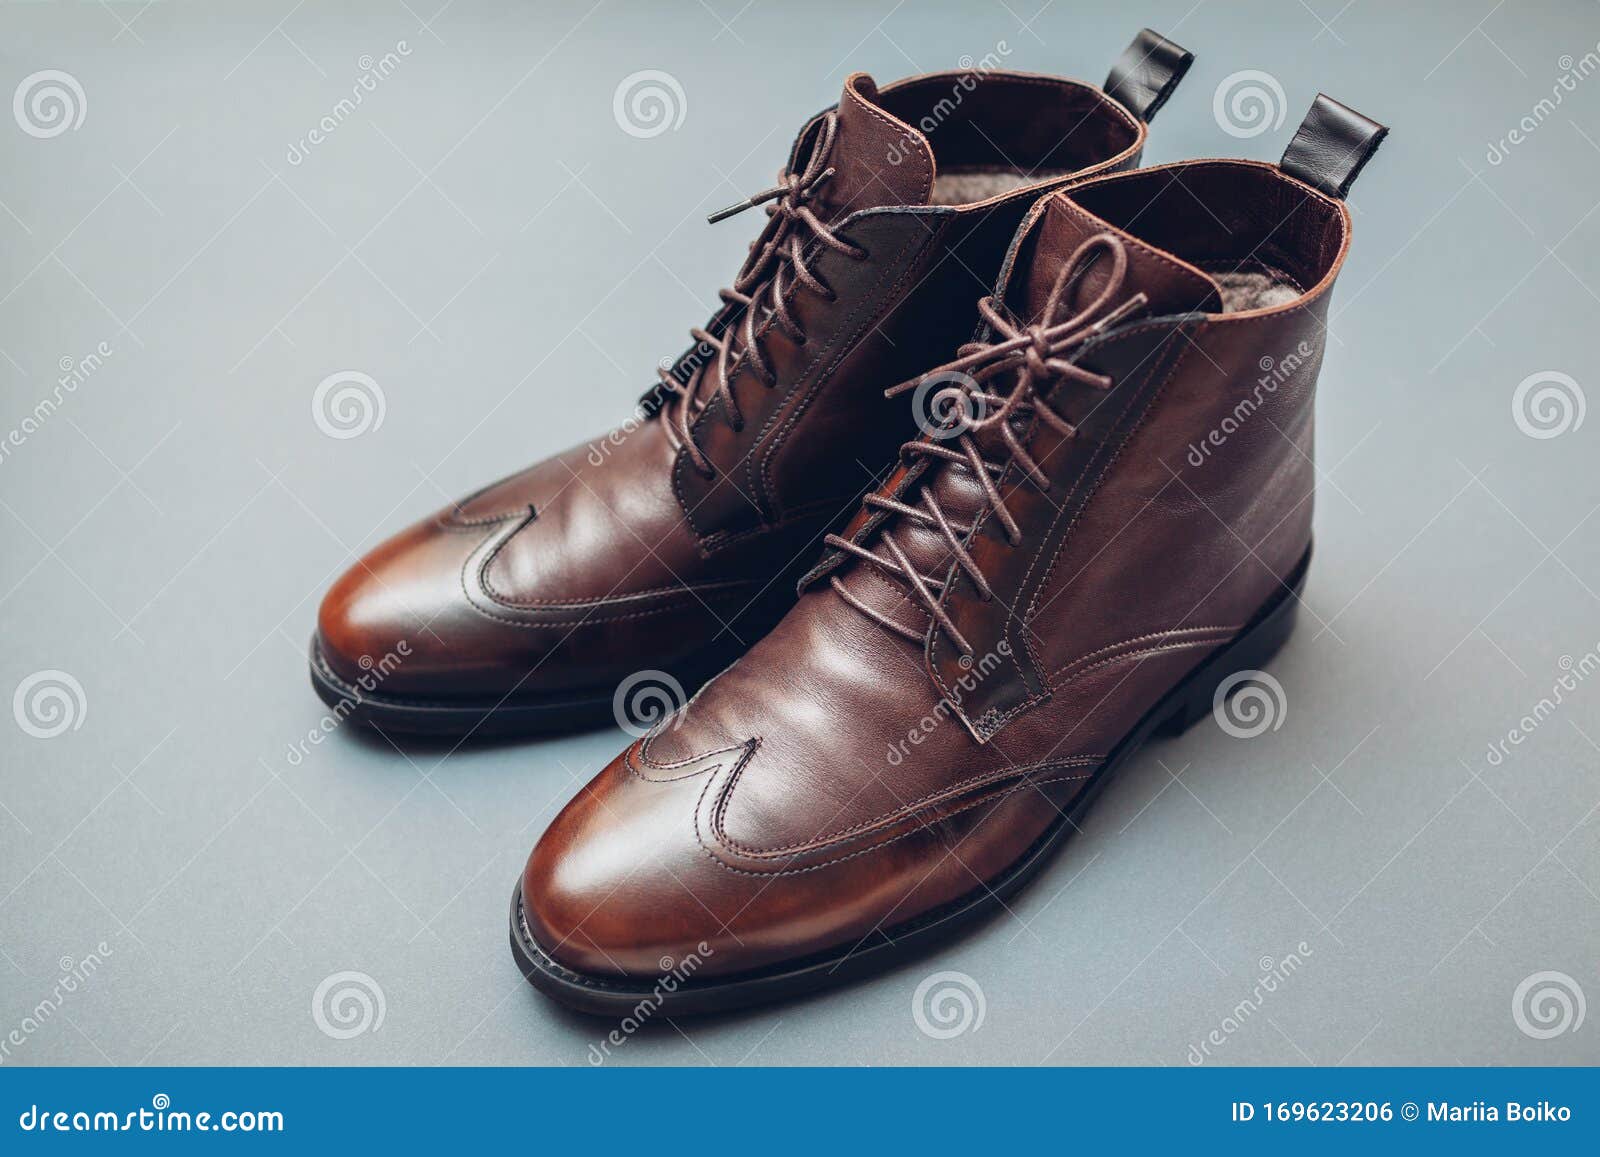 stylish leather shoes